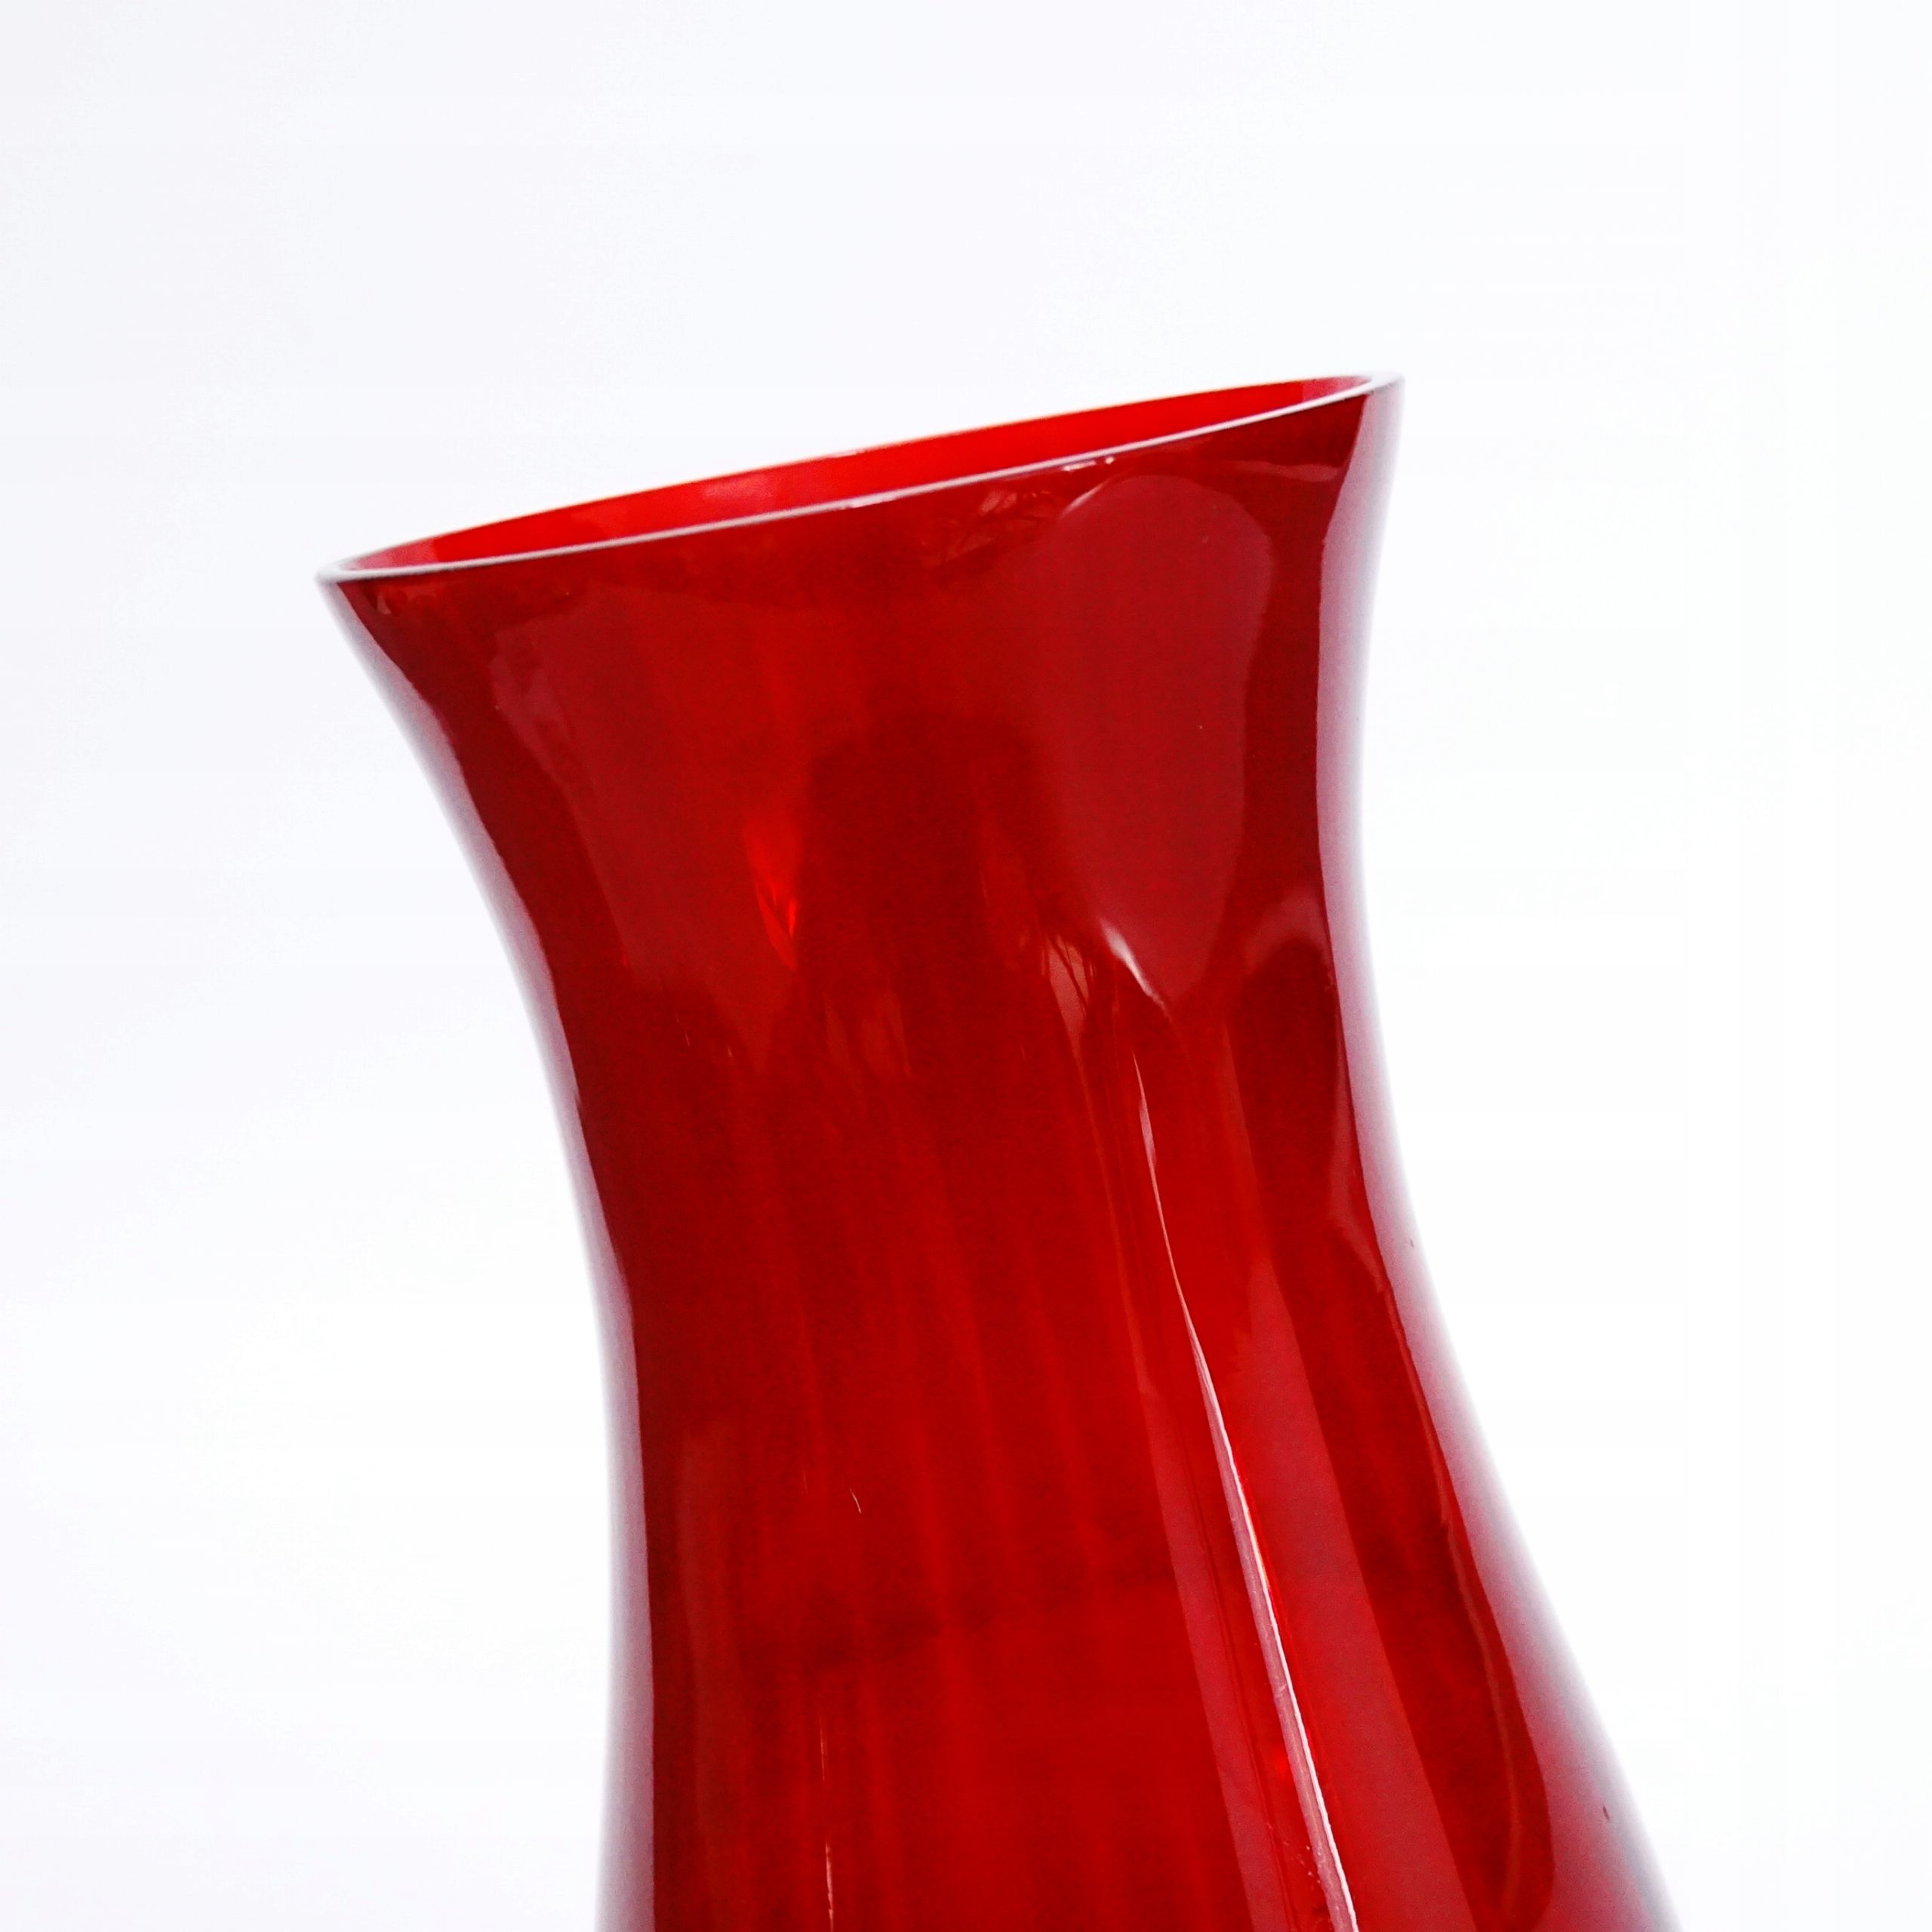 rubinowe szkło piękny stary wazon szklany